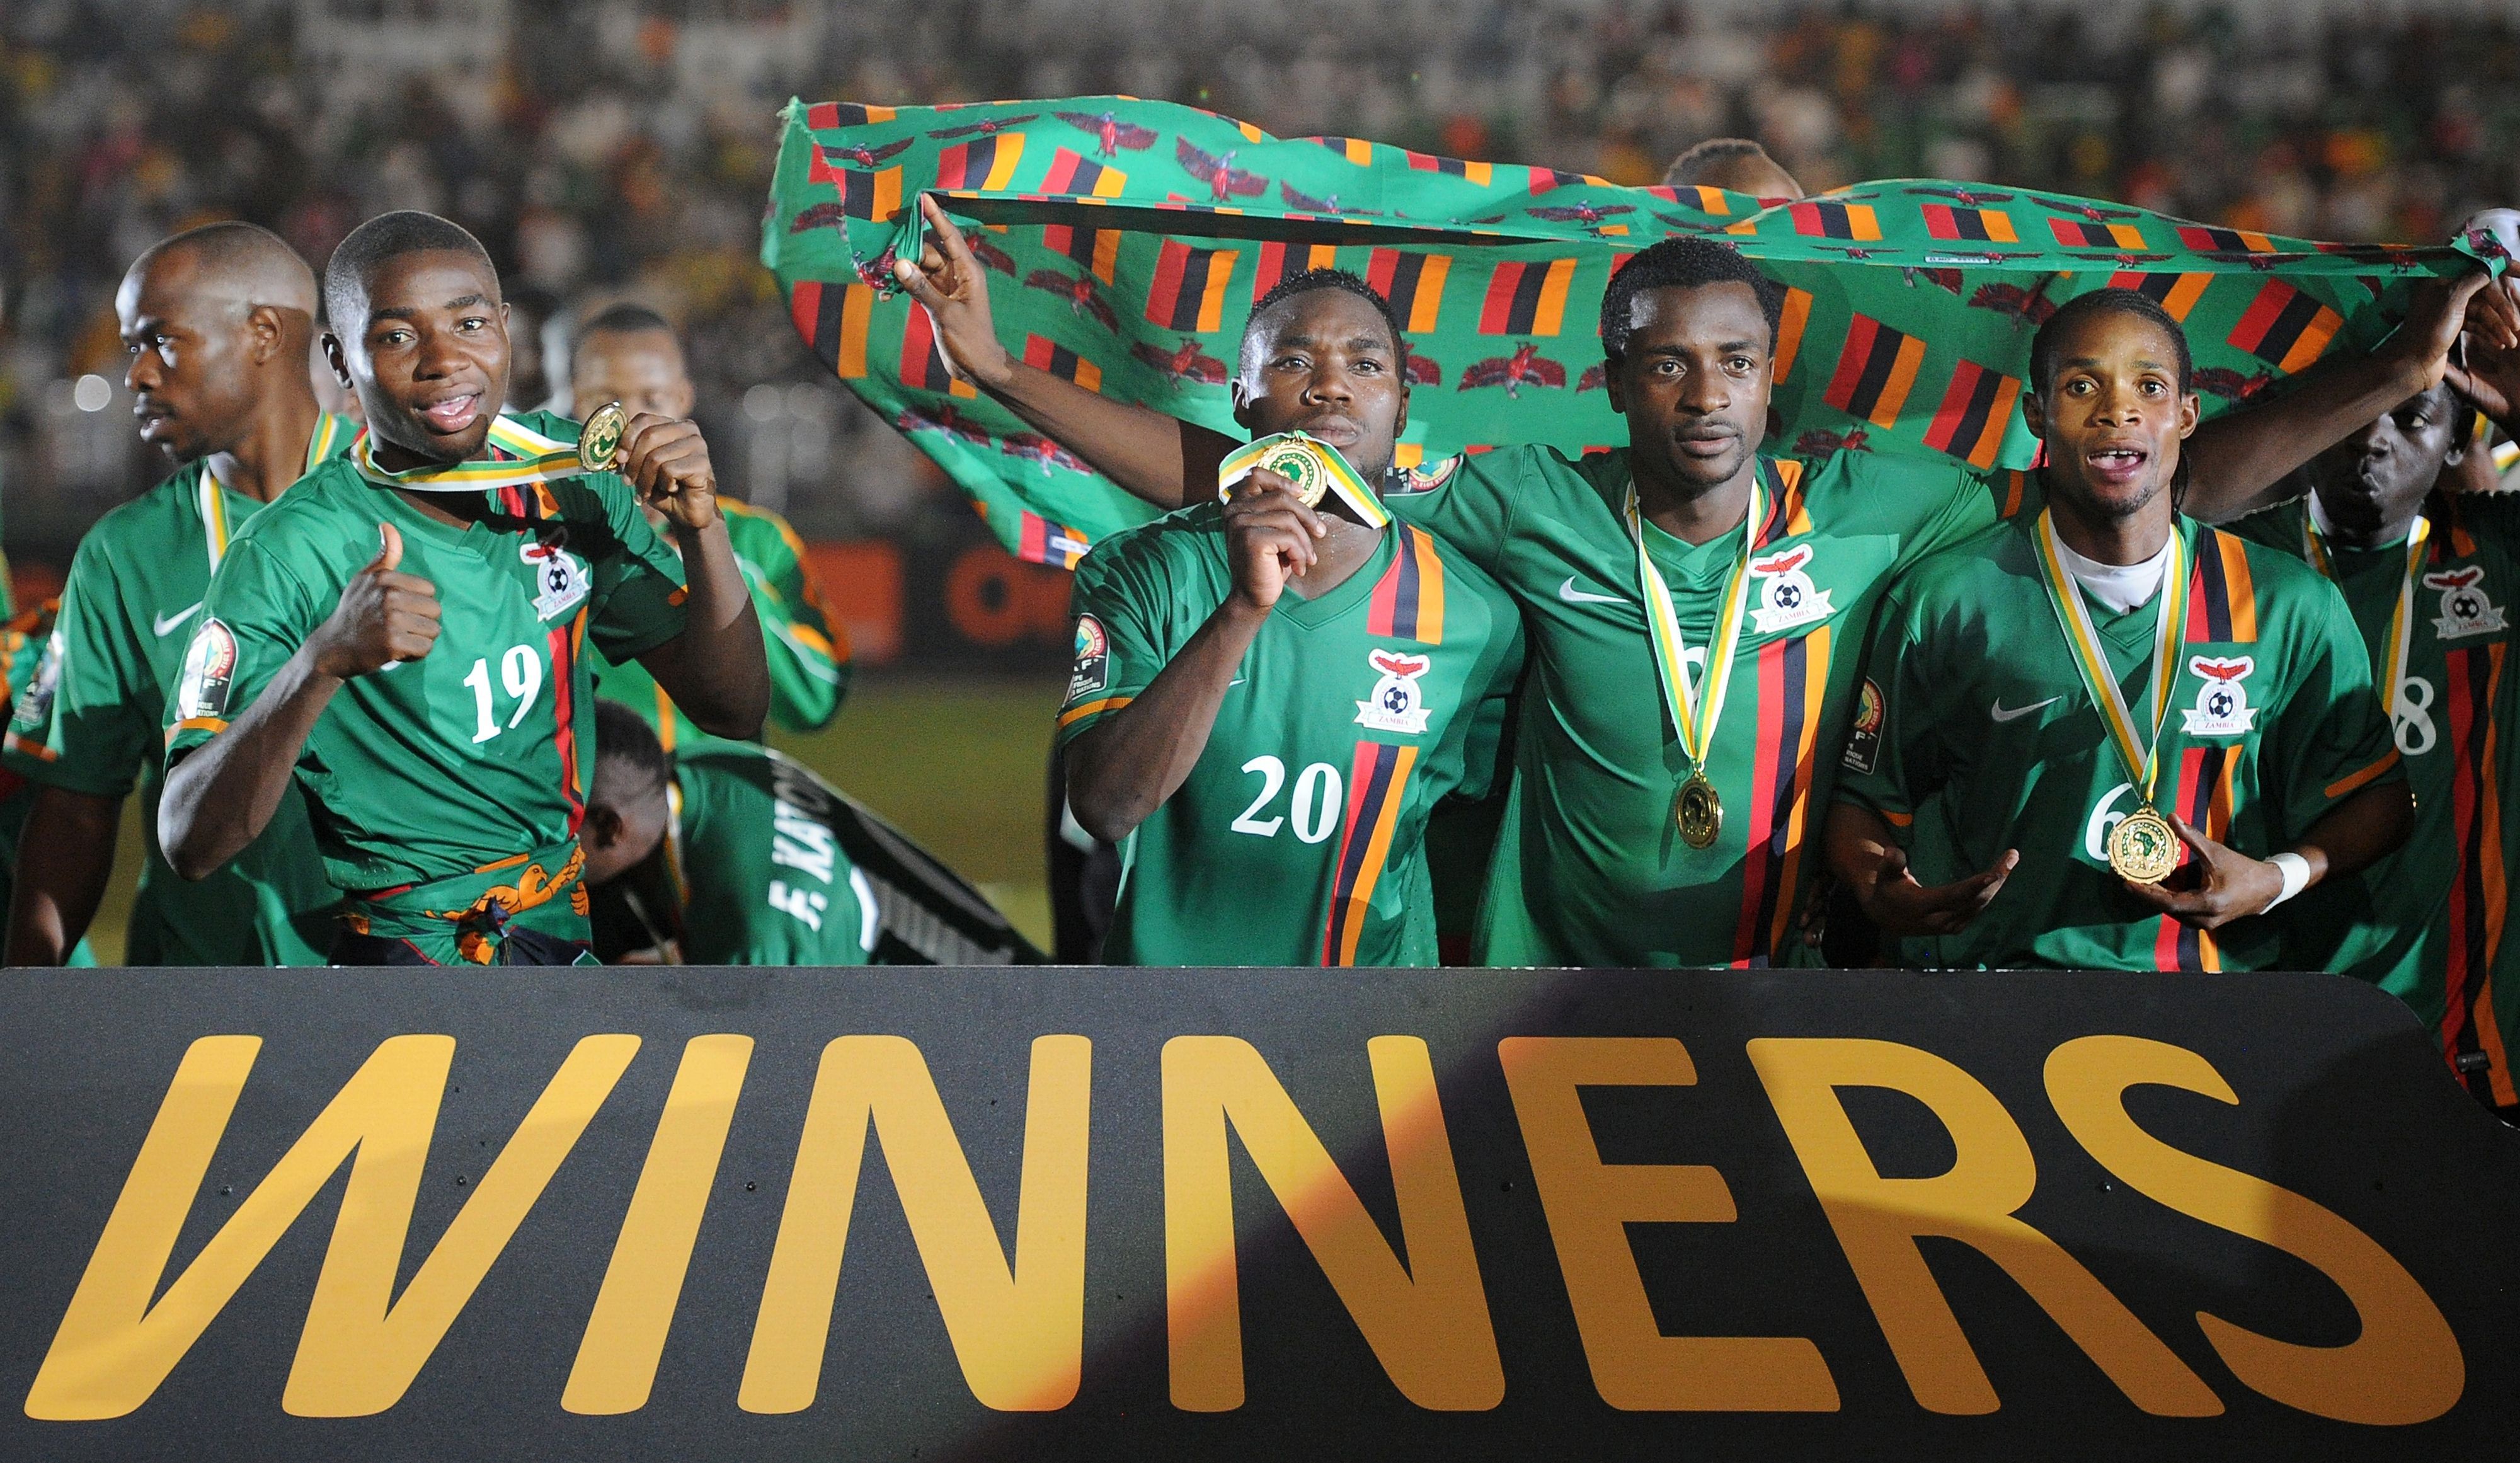 En la edición 2013, jugada en Sudáfrica, Nigeria se proclamó campeón.